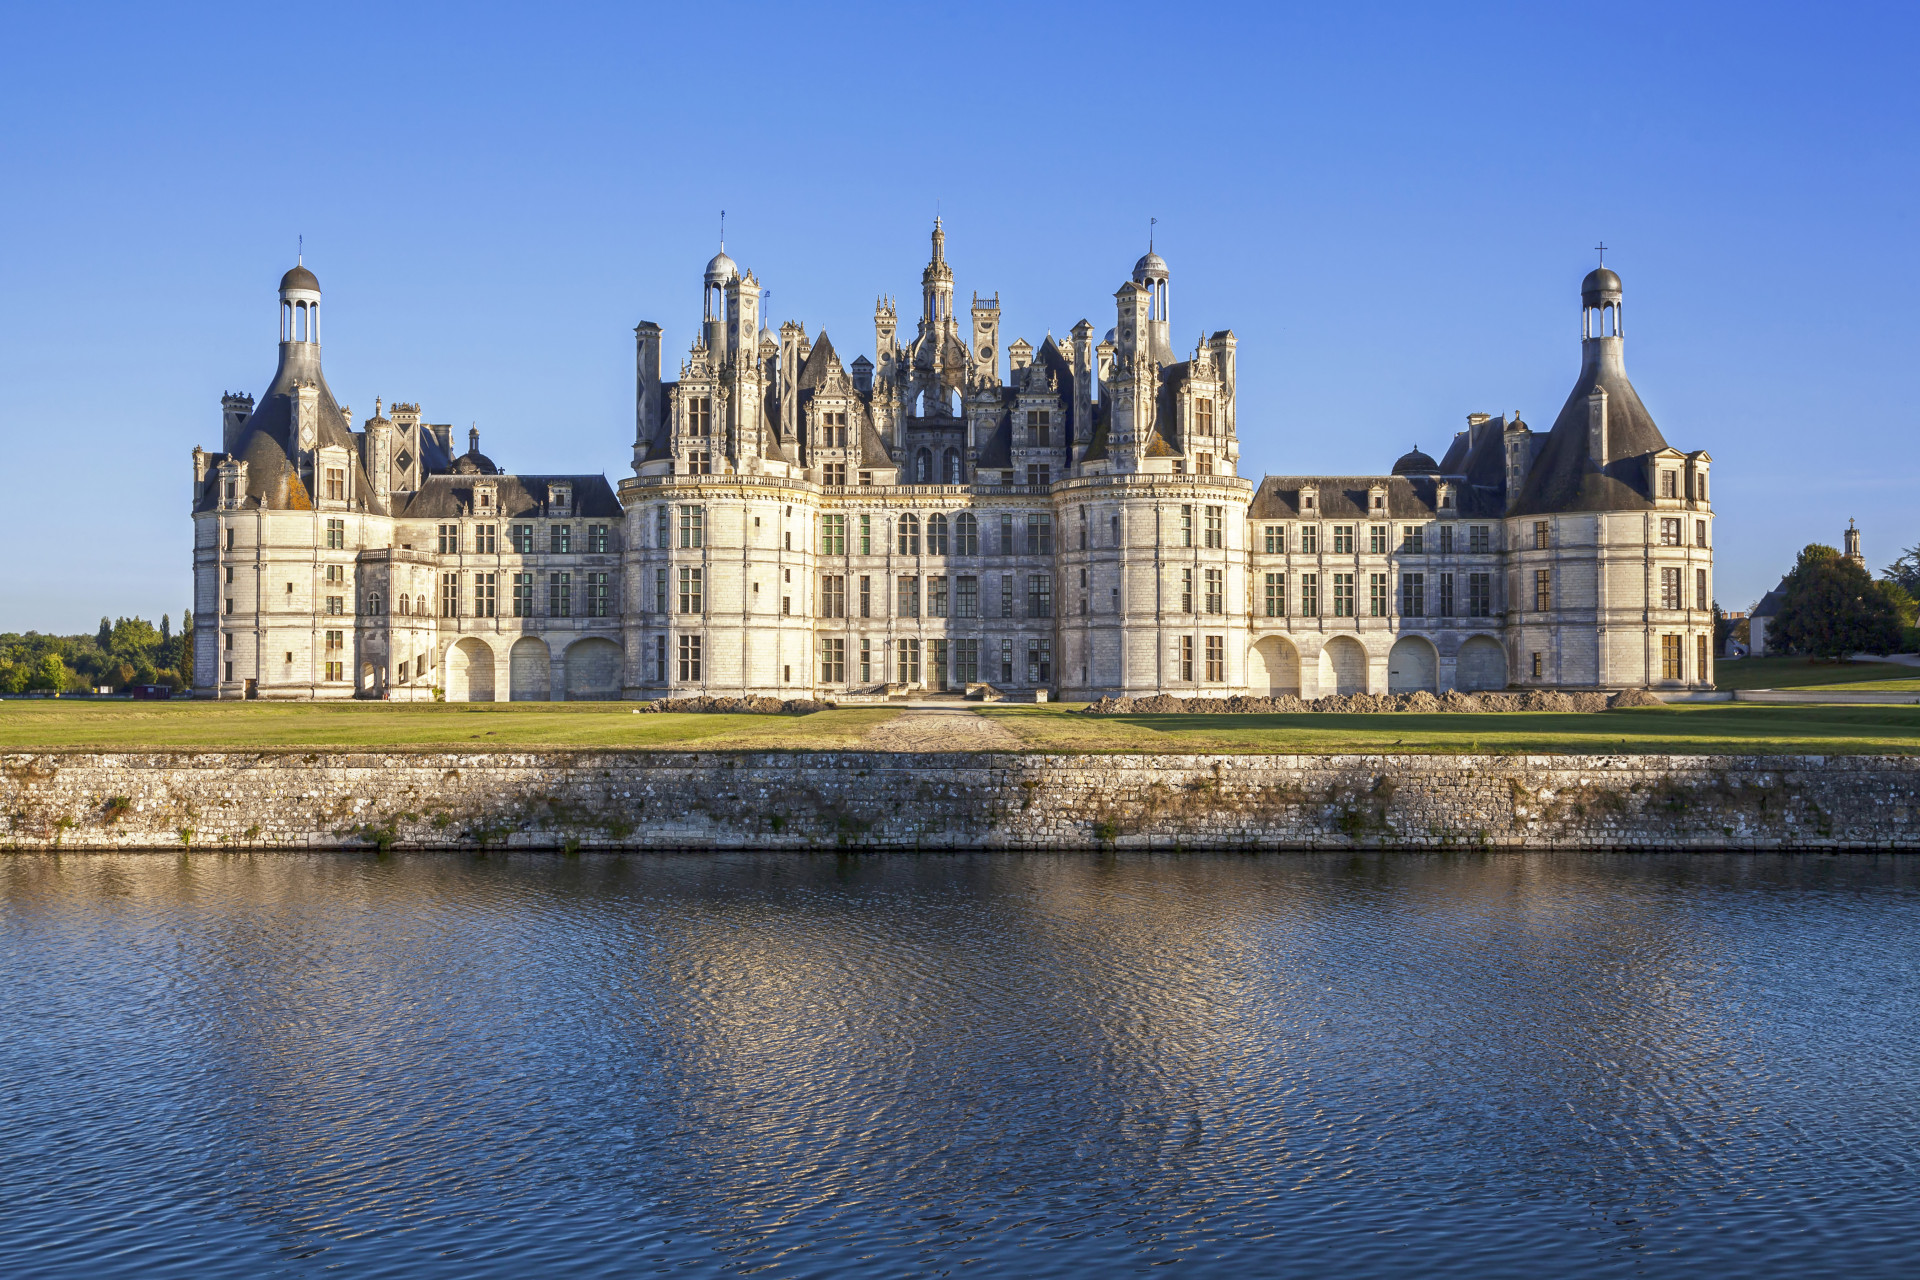 C'est le plus grand des châteaux de la Loire.<p>Tu pourrais aussi aimer:<a href="https://www.starsinsider.com/n/430986?utm_source=msn.com&utm_medium=display&utm_campaign=referral_description&utm_content=161049v2"> Les lolitas et chanteuses françaises: que sont elles devenues ?</a></p>